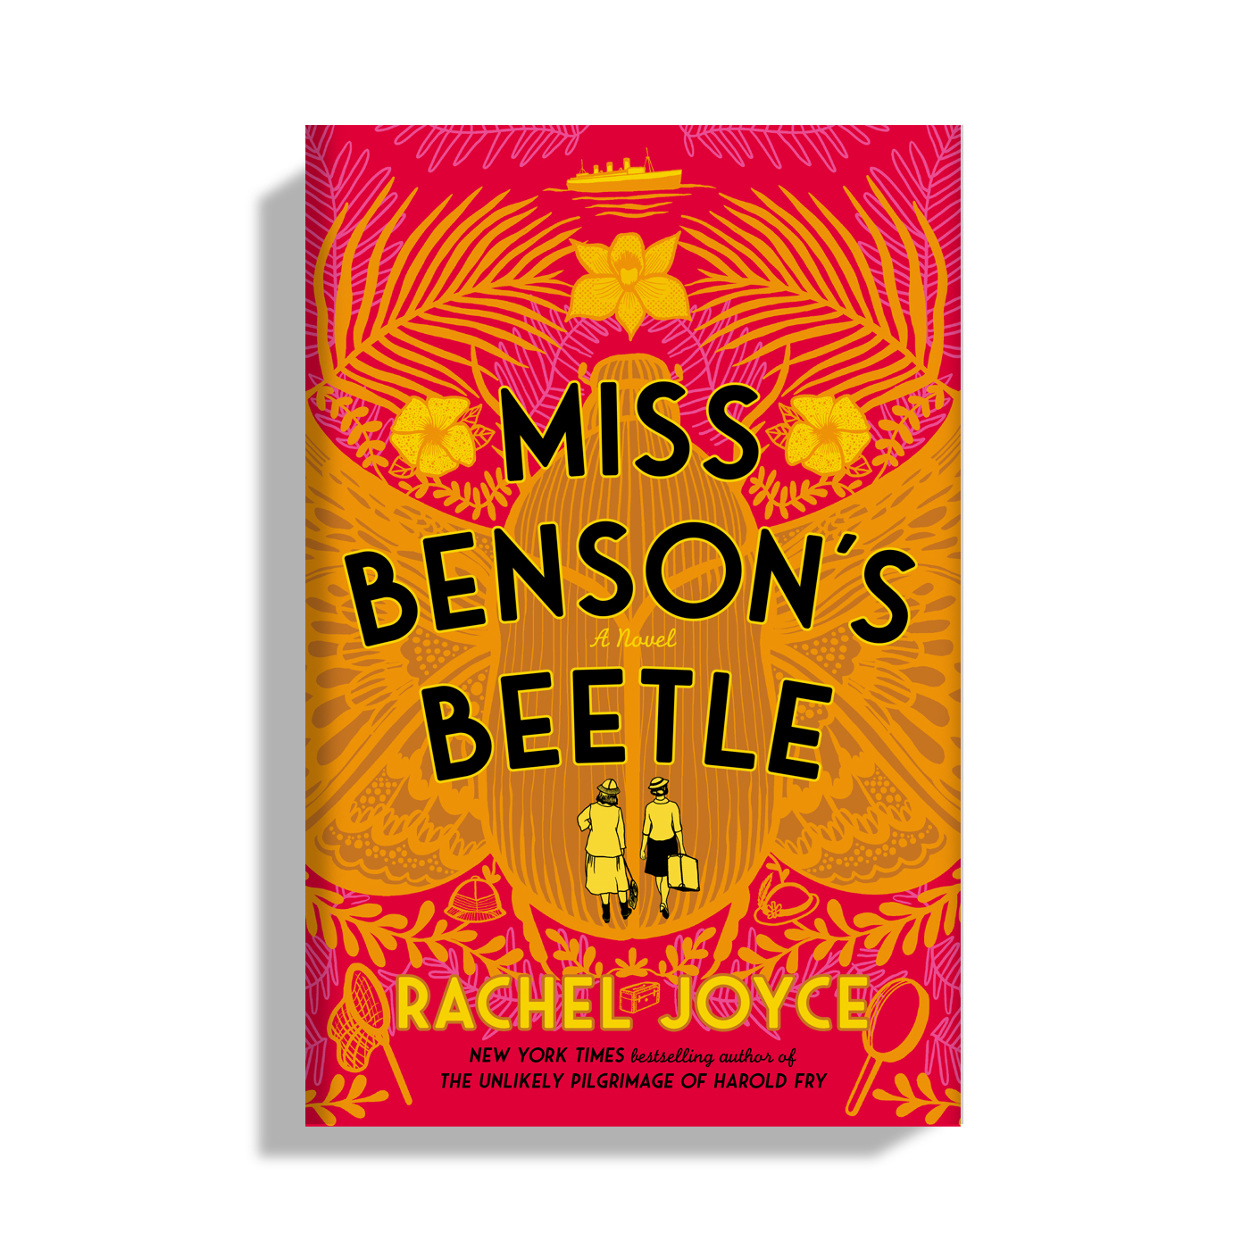 We will be discussing, Miss Benson's Beetle written by Rachel Joyce.